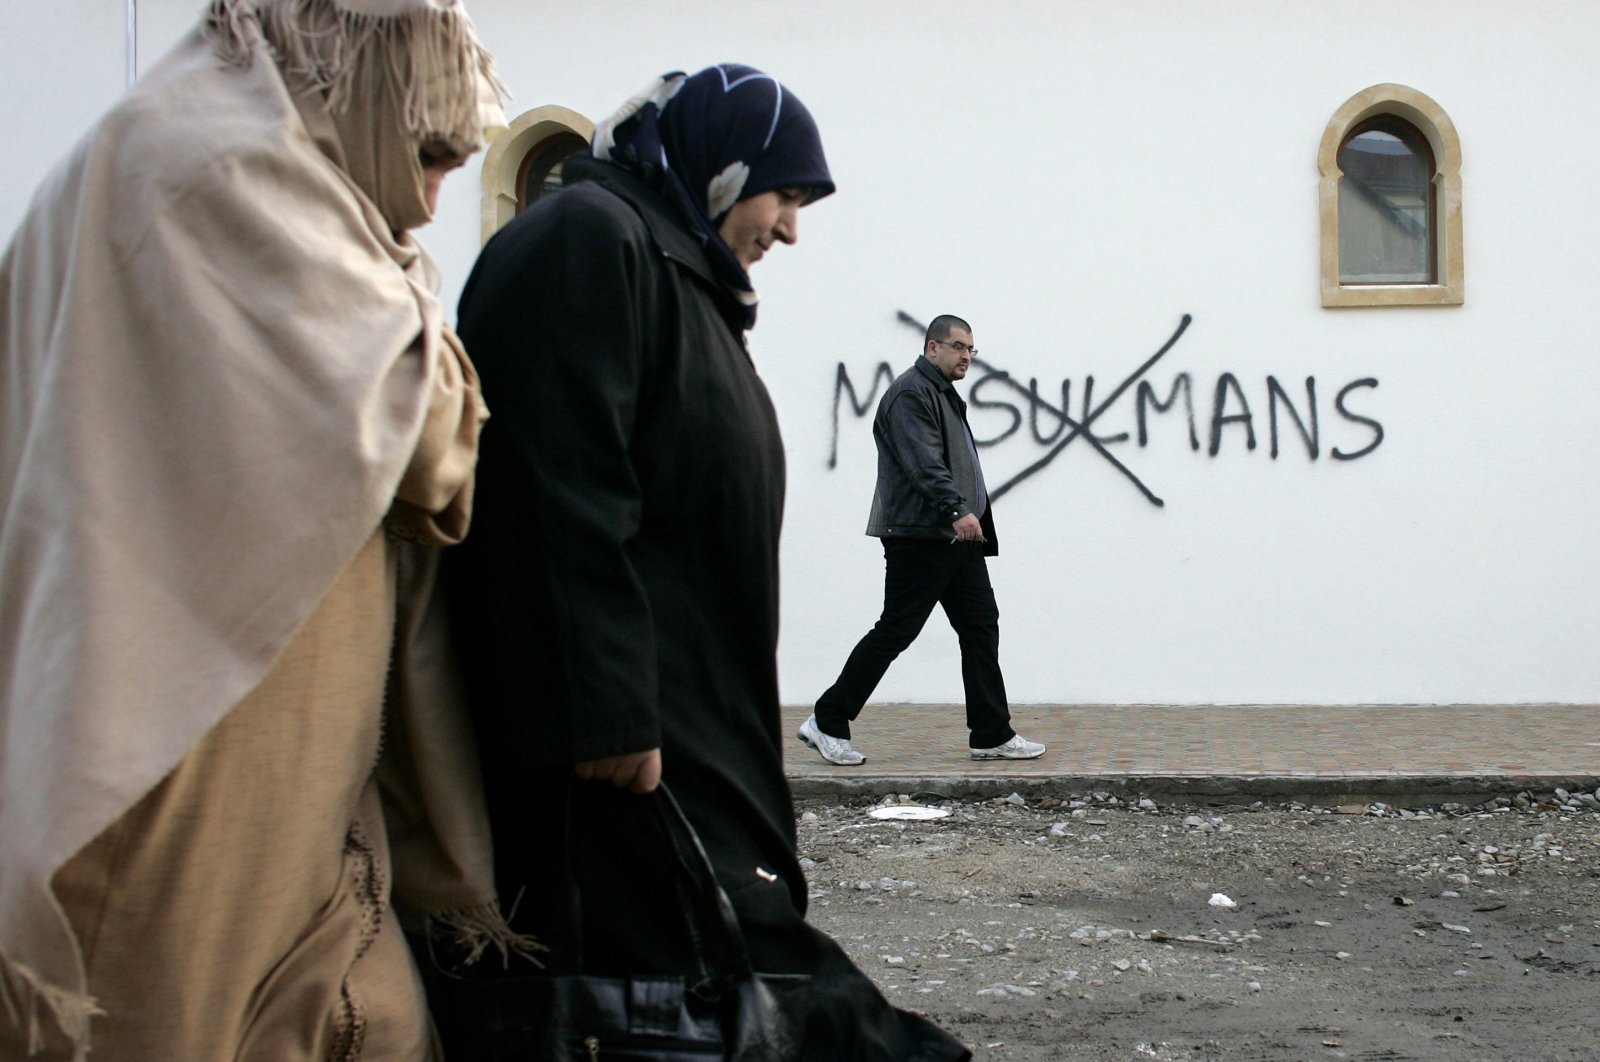 Prancis menggunakan alasan ‘ekstremisme’ untuk menutup masjid lain